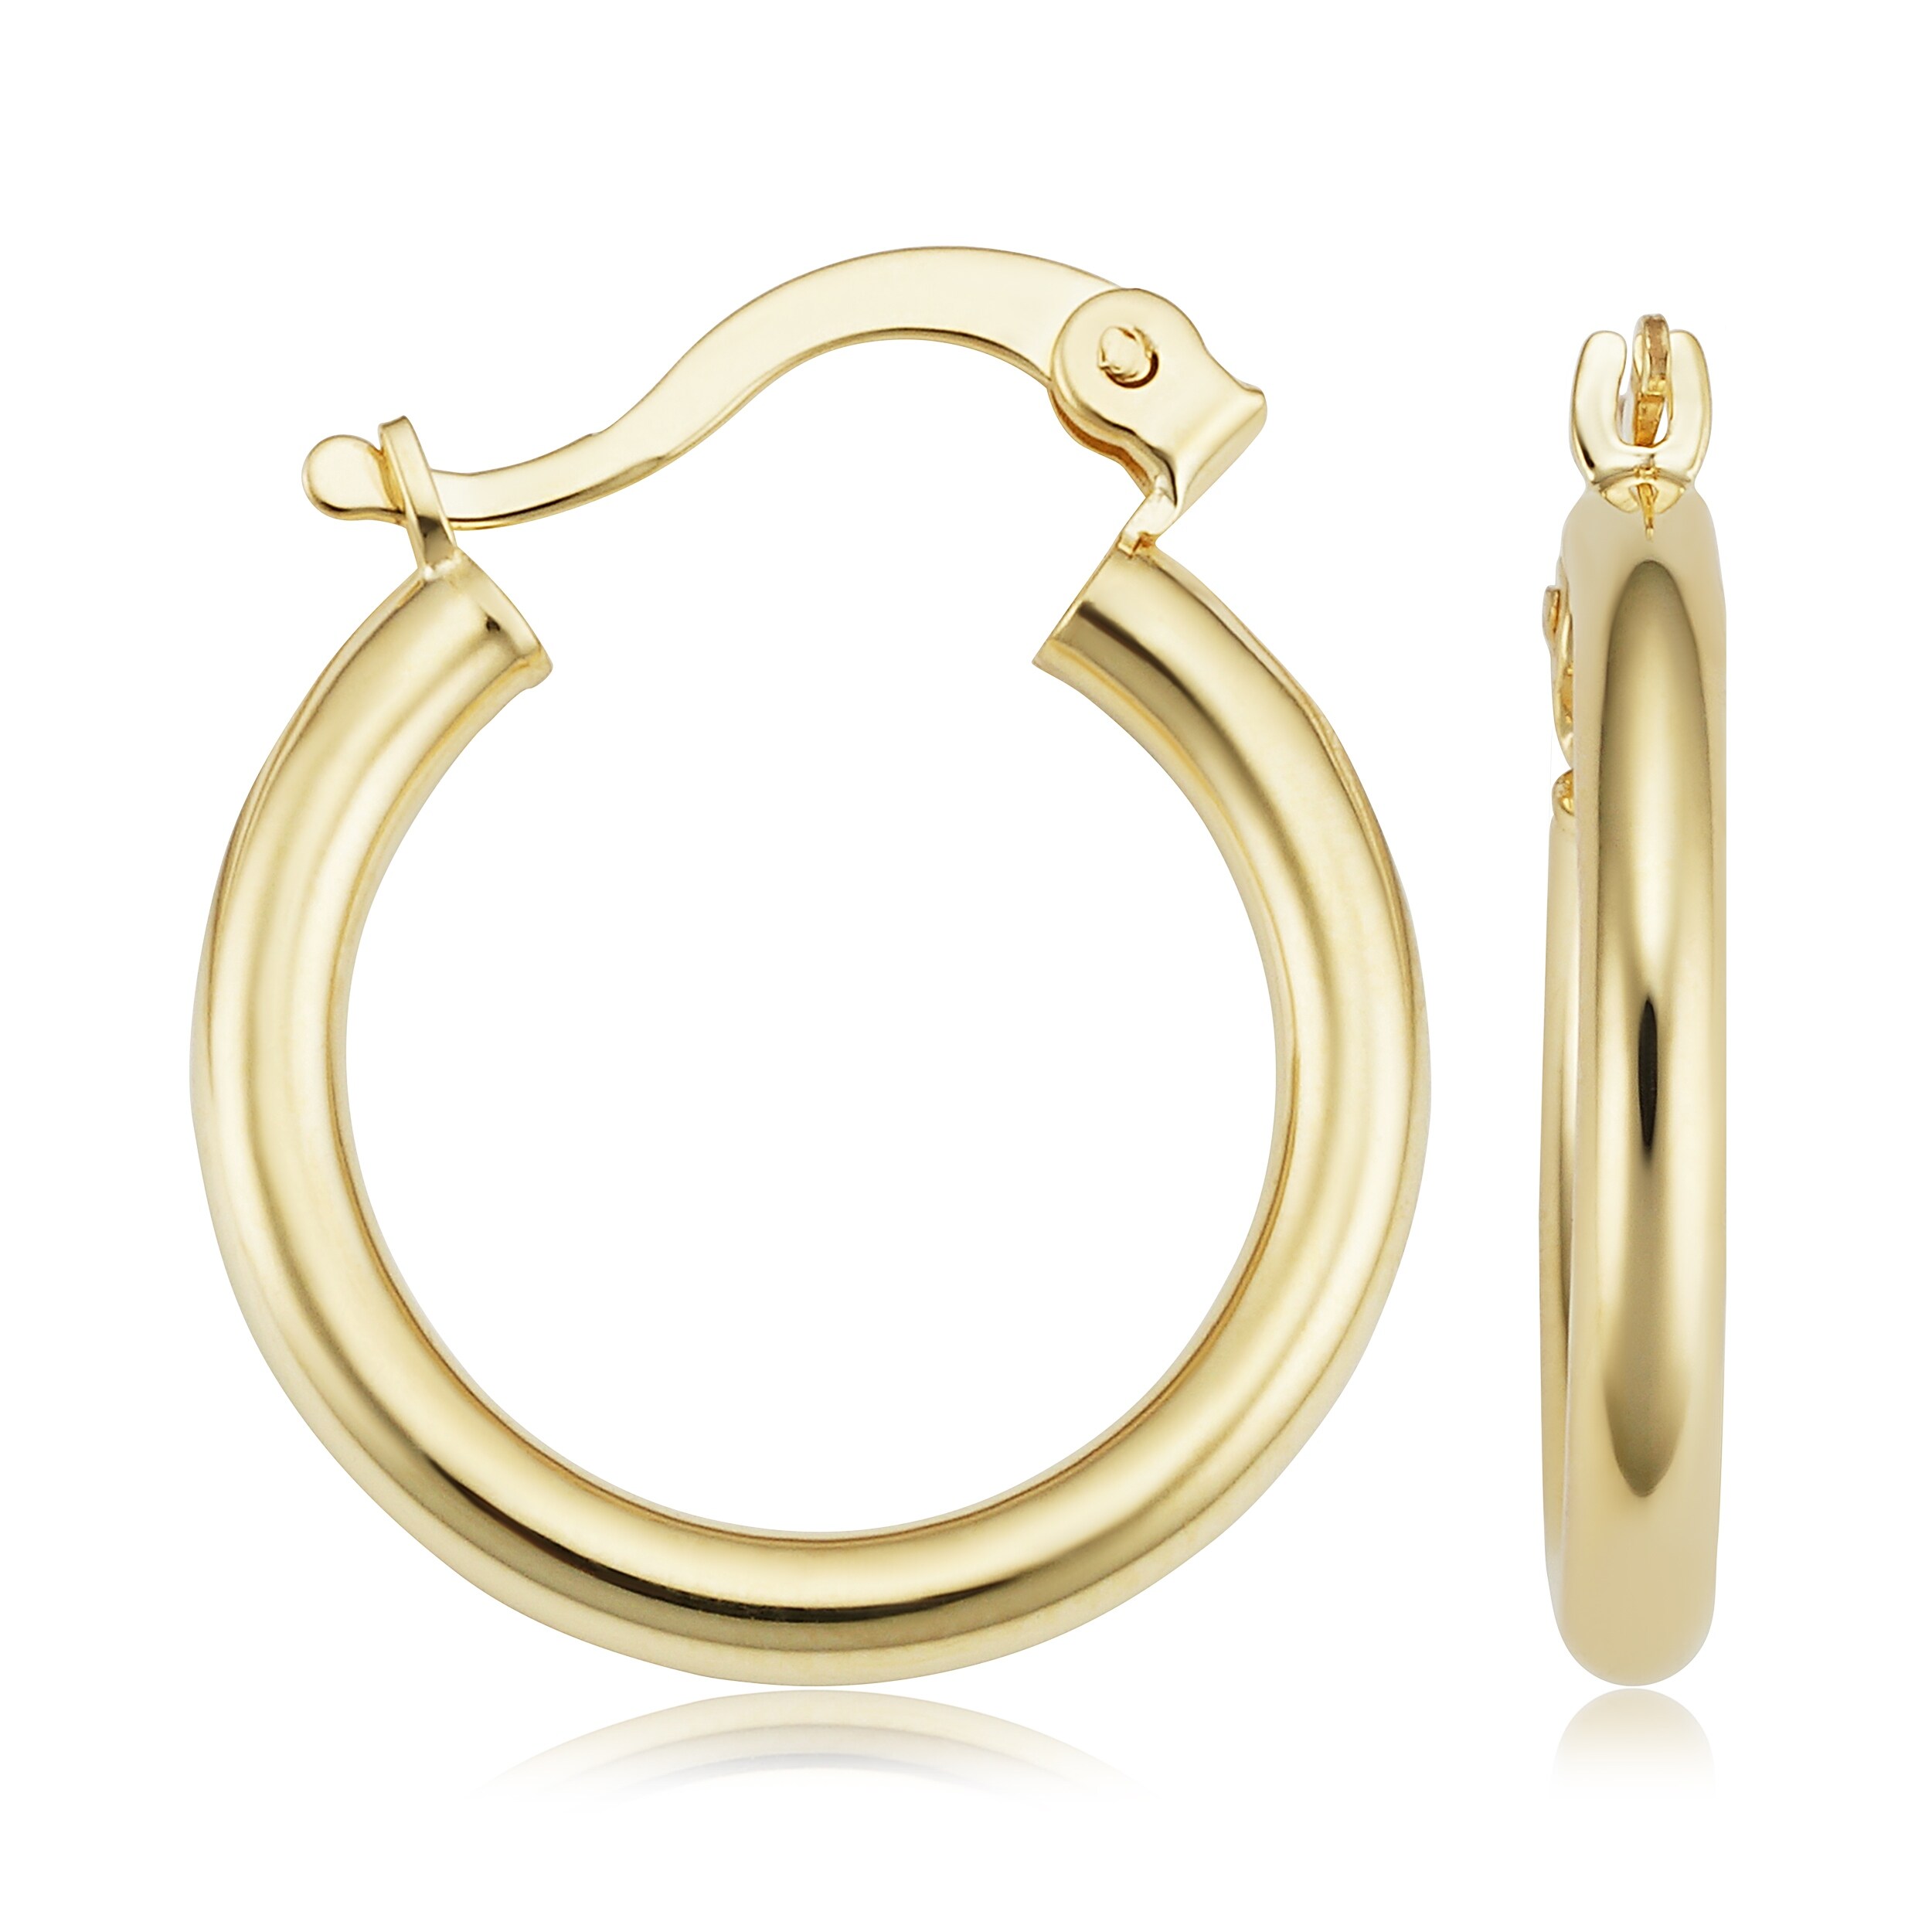 Best Quality Free Gift Box 14k Lightweight Oval Hoop Earrings 